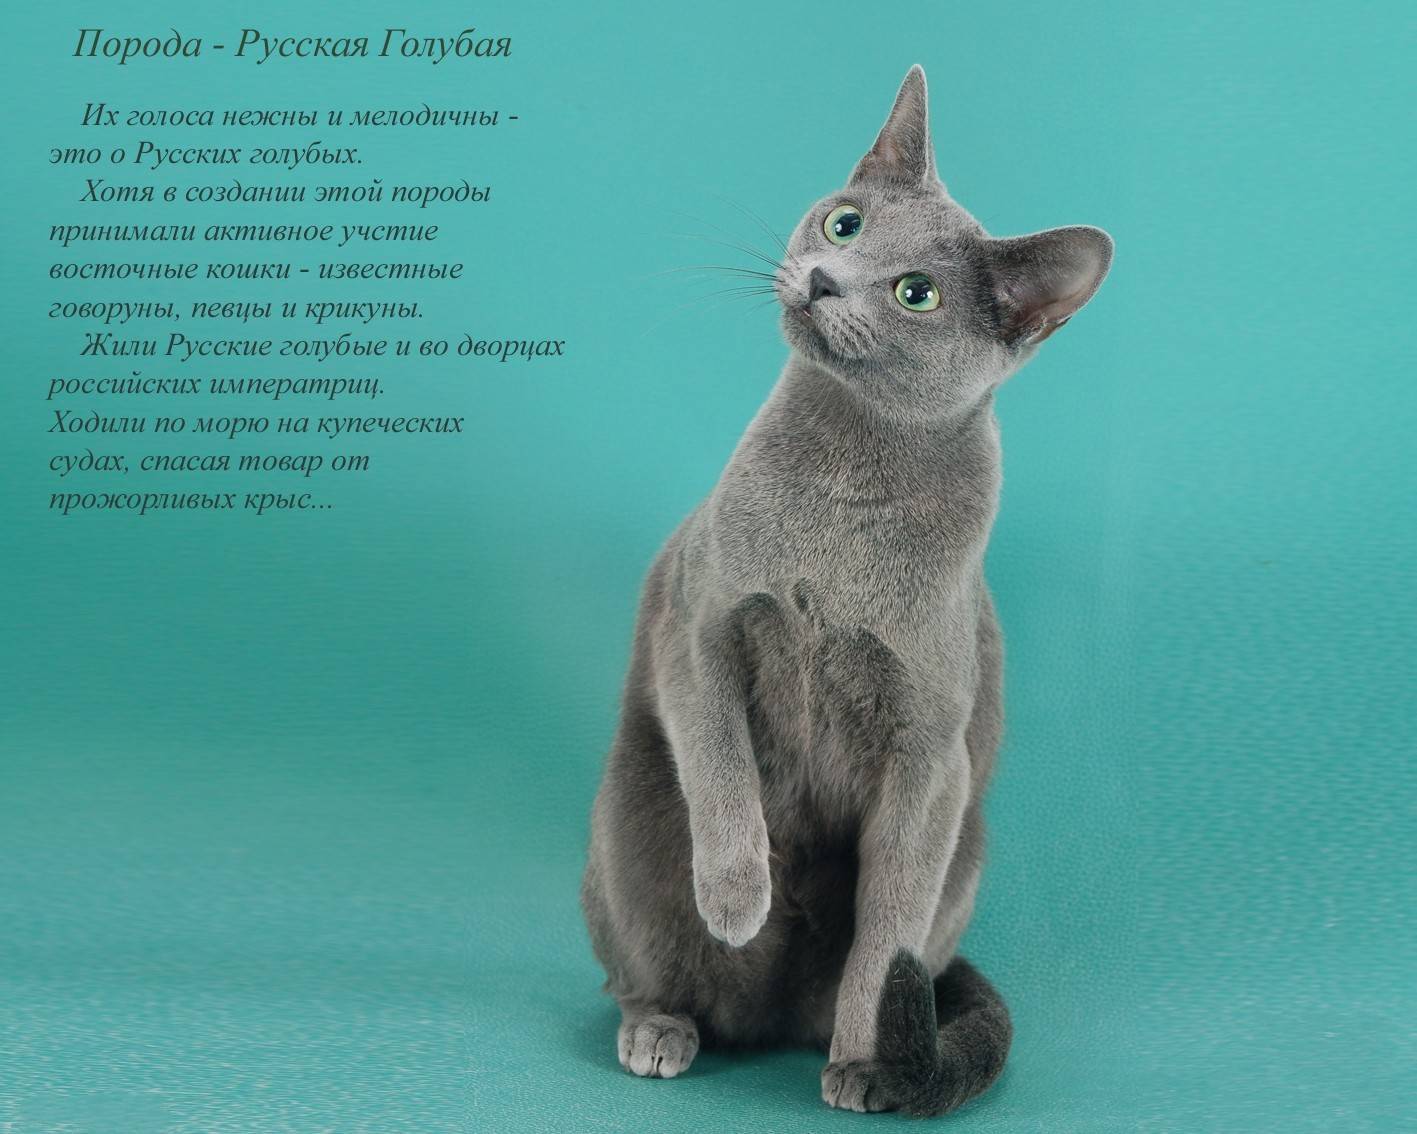 Русская голубая – аристократка мира кошек с загадочным происхождением: описание +видео и фото